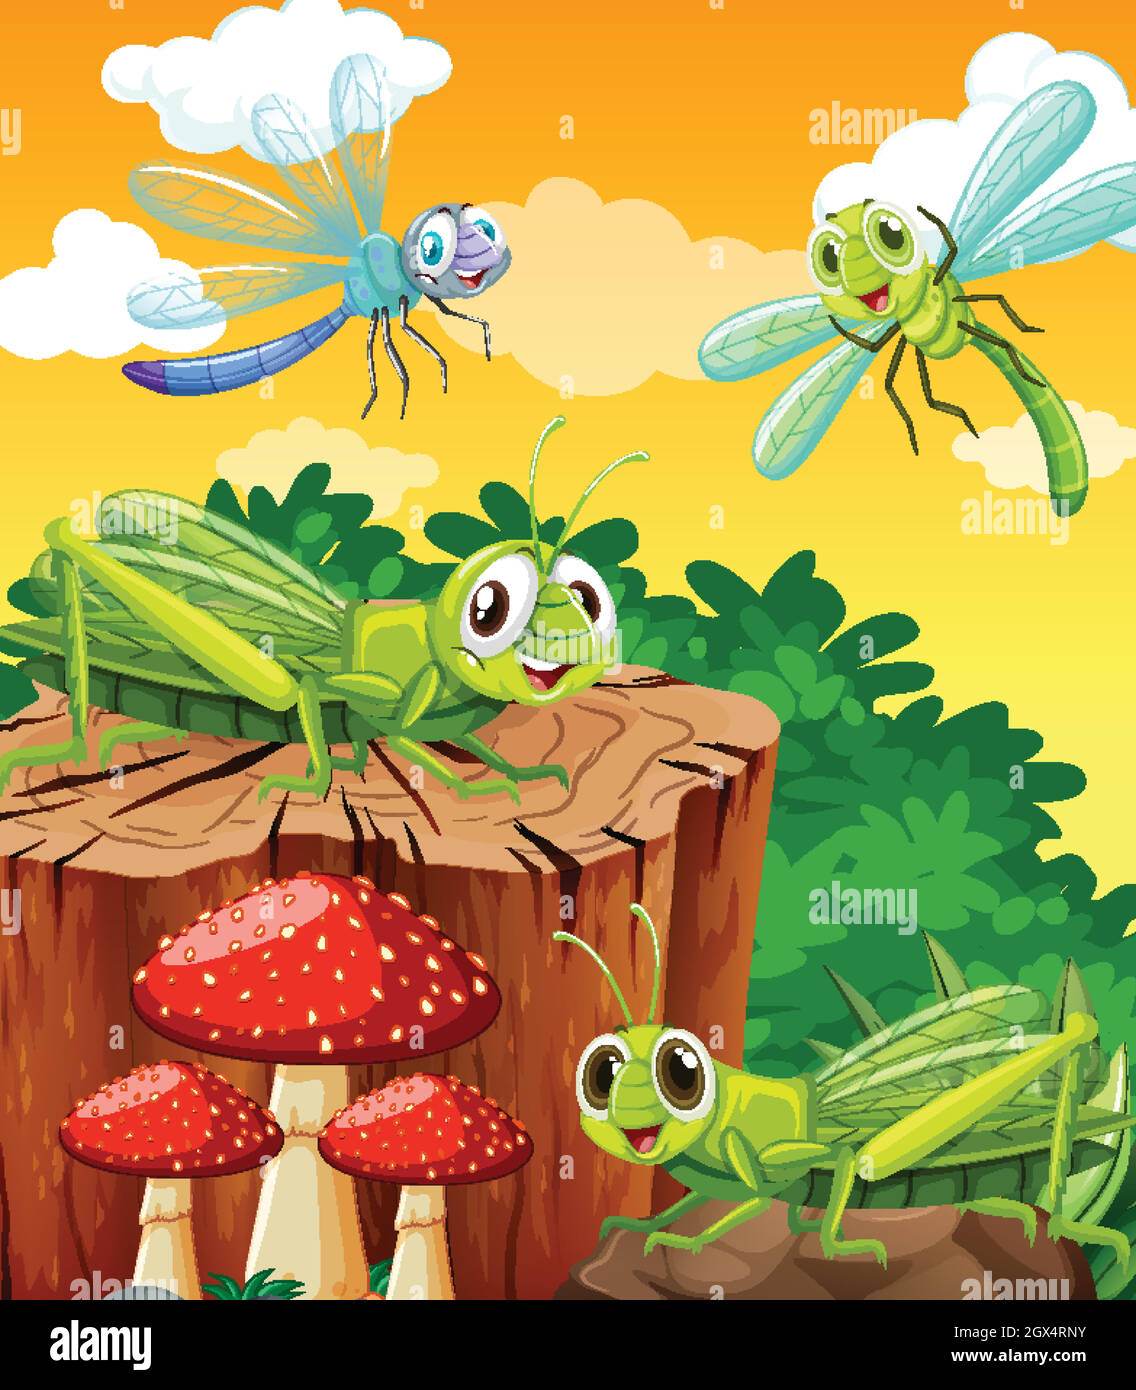 Four grasshoper living in the garden scene at daytime Stock Vector